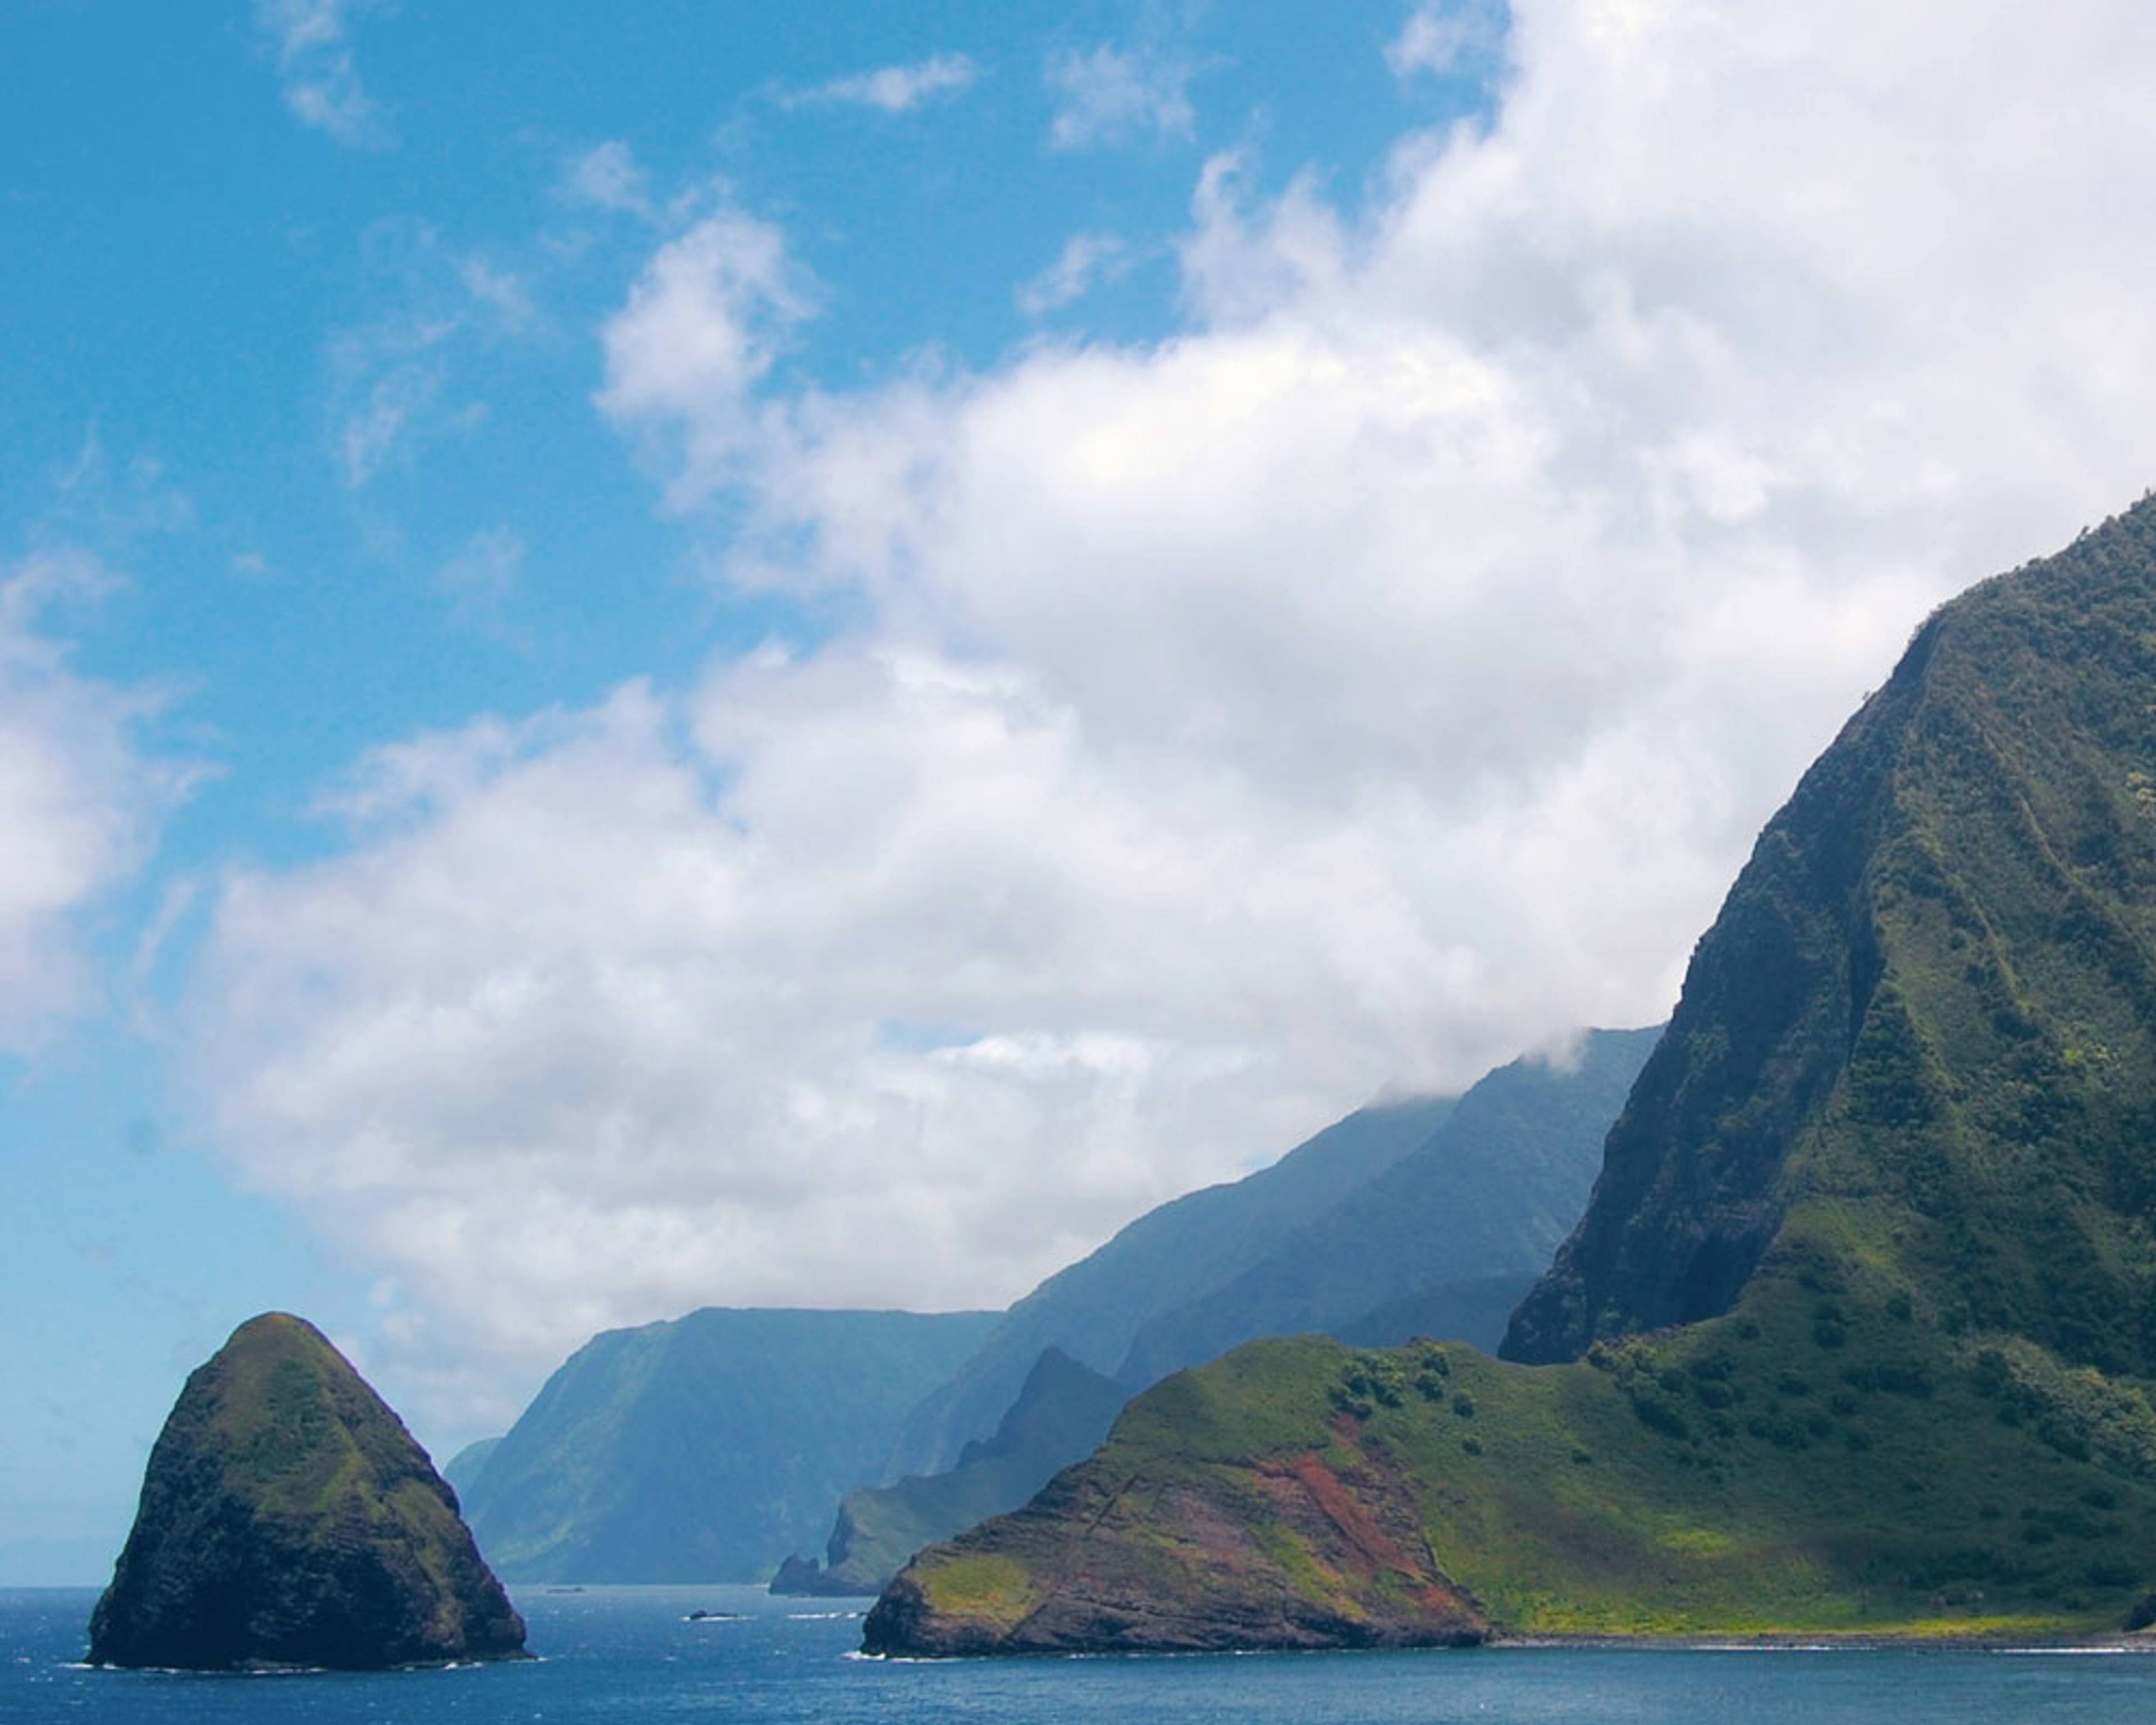 Partez à la découverte des îles d'Hawaï 100% sur mesure